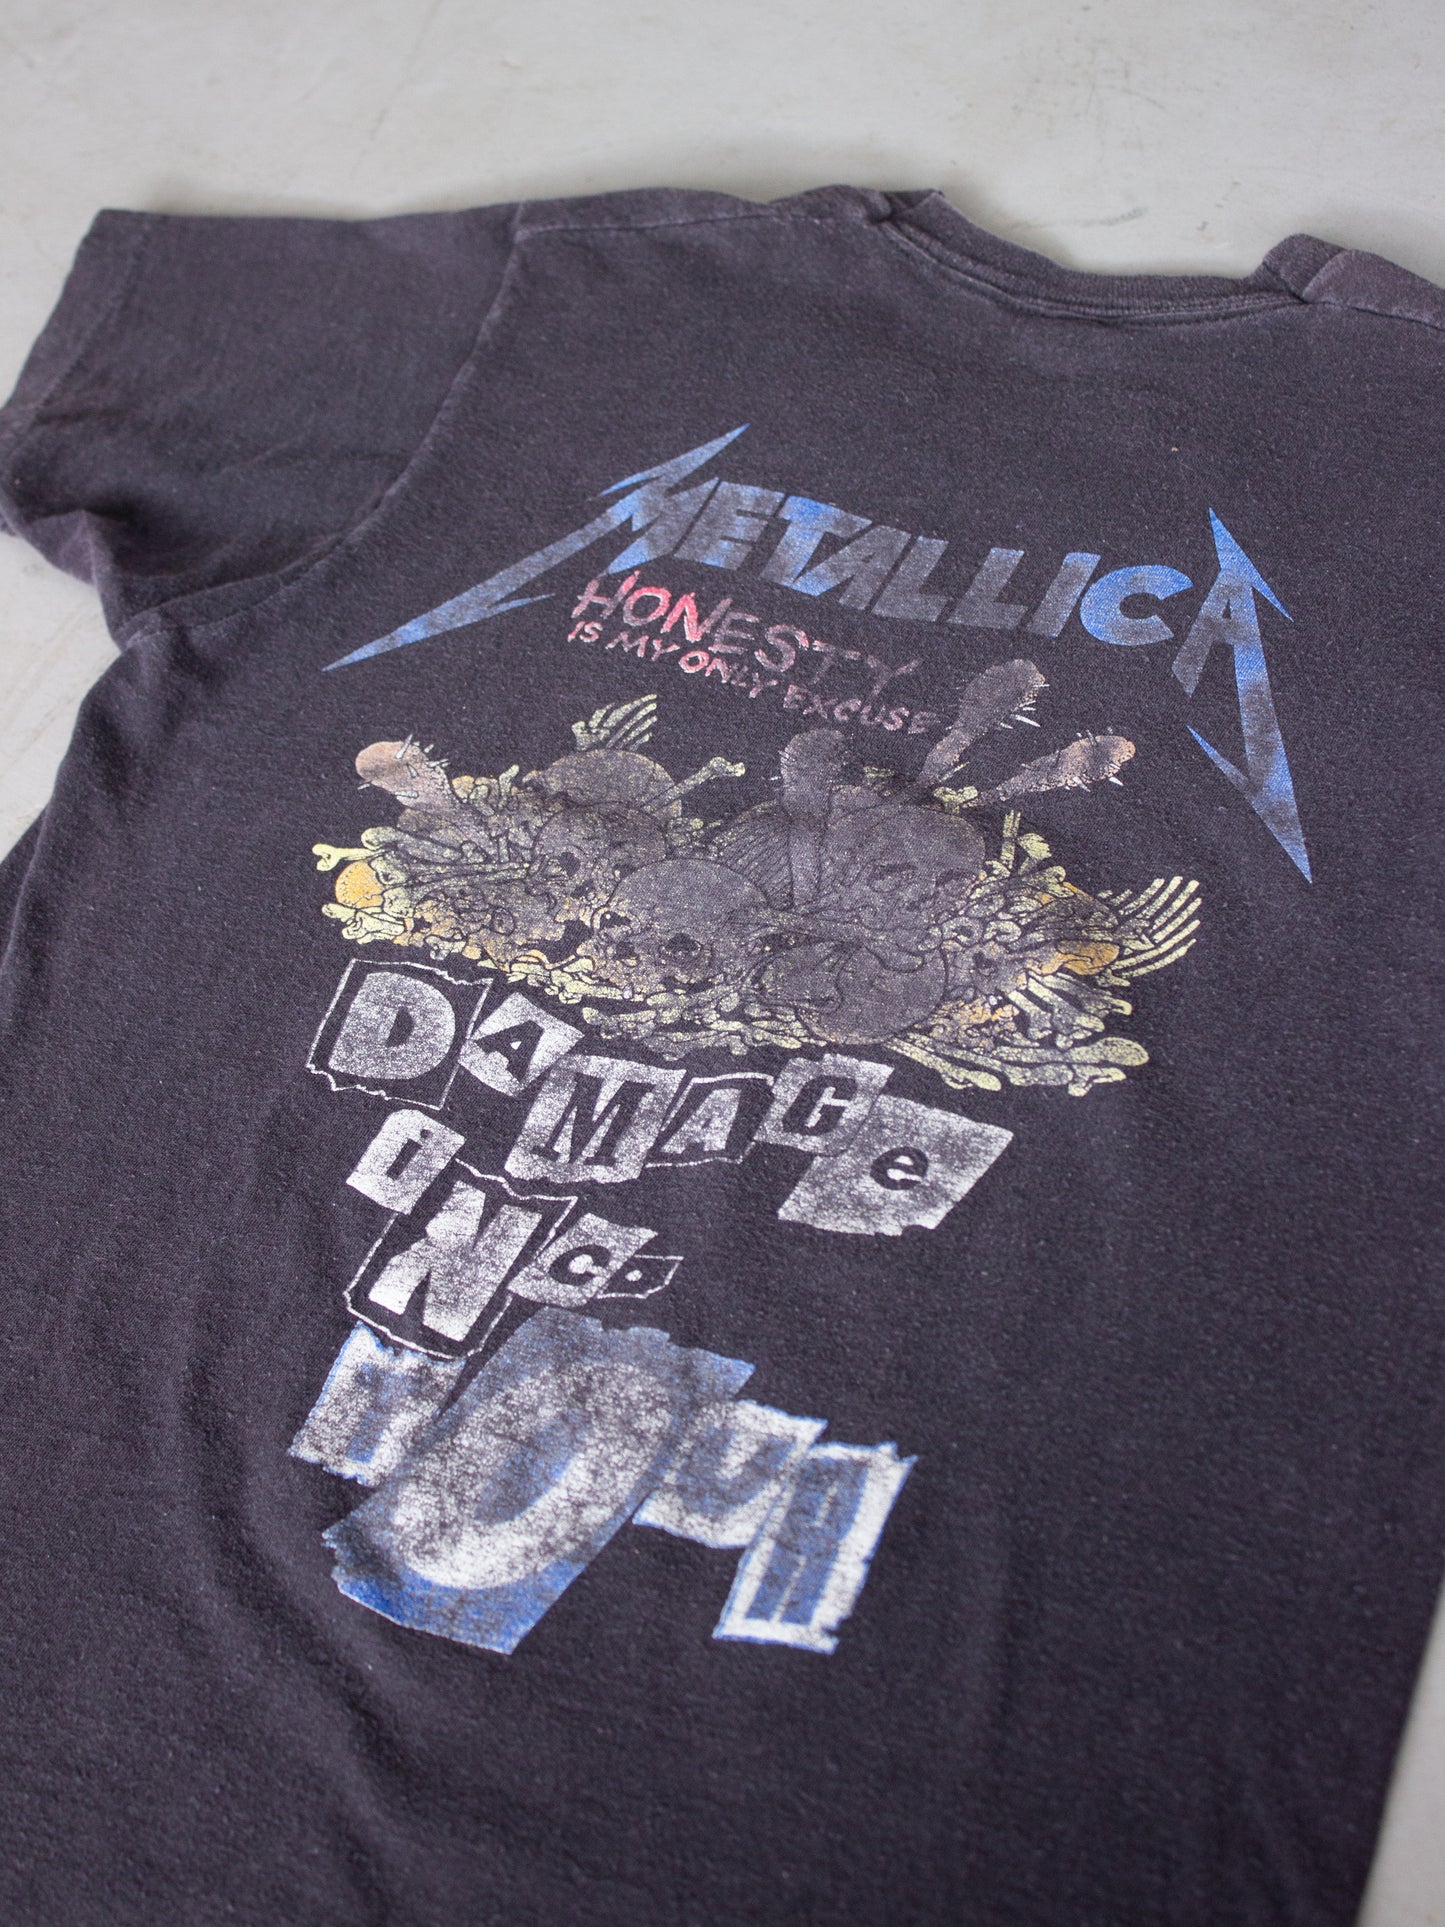 1980's Metallica 'Damage Inc.' Tour T-shirt (Small)